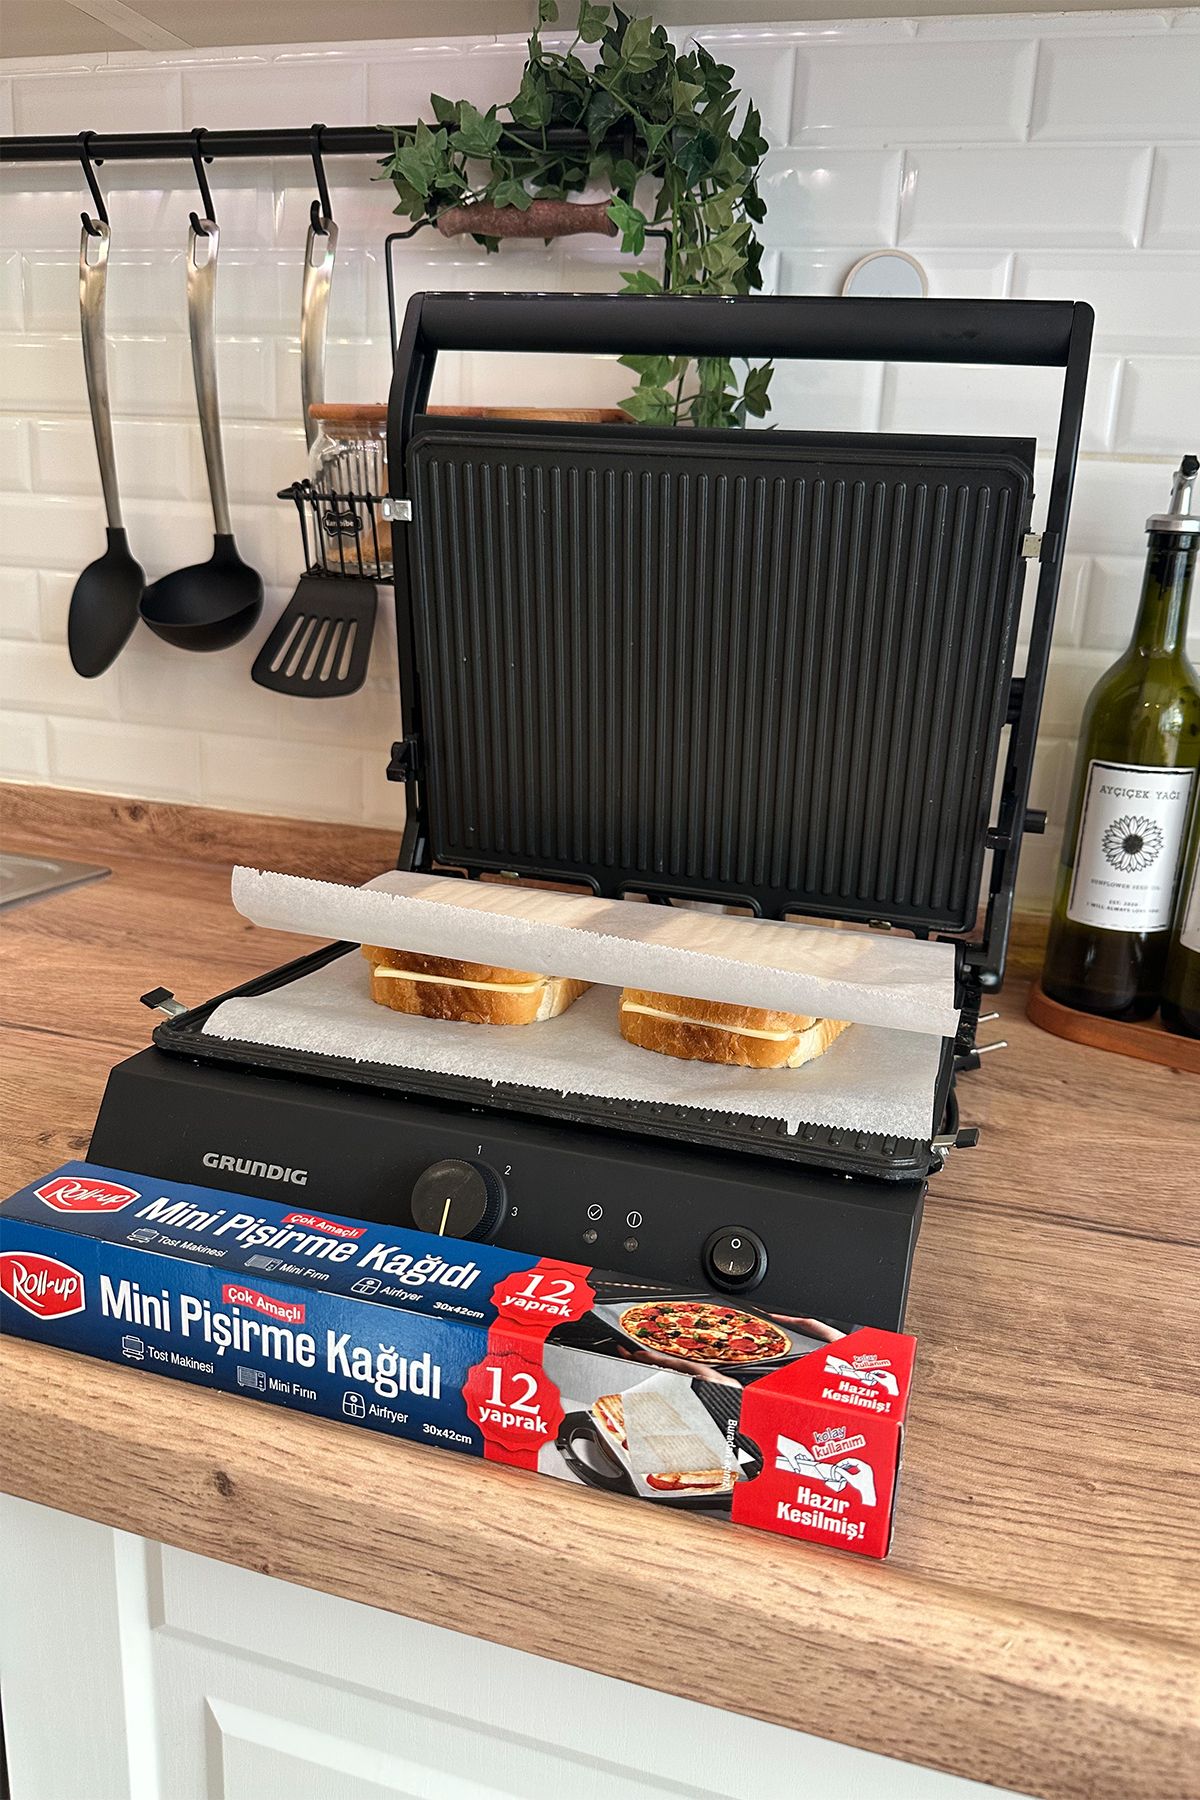 Roll Up Kesilmiş Mini Pişirme Kağıdı Airfryer - Tost Makinesi - Mini Fırın uyumlu 12 Yaprak x 6 Kutu